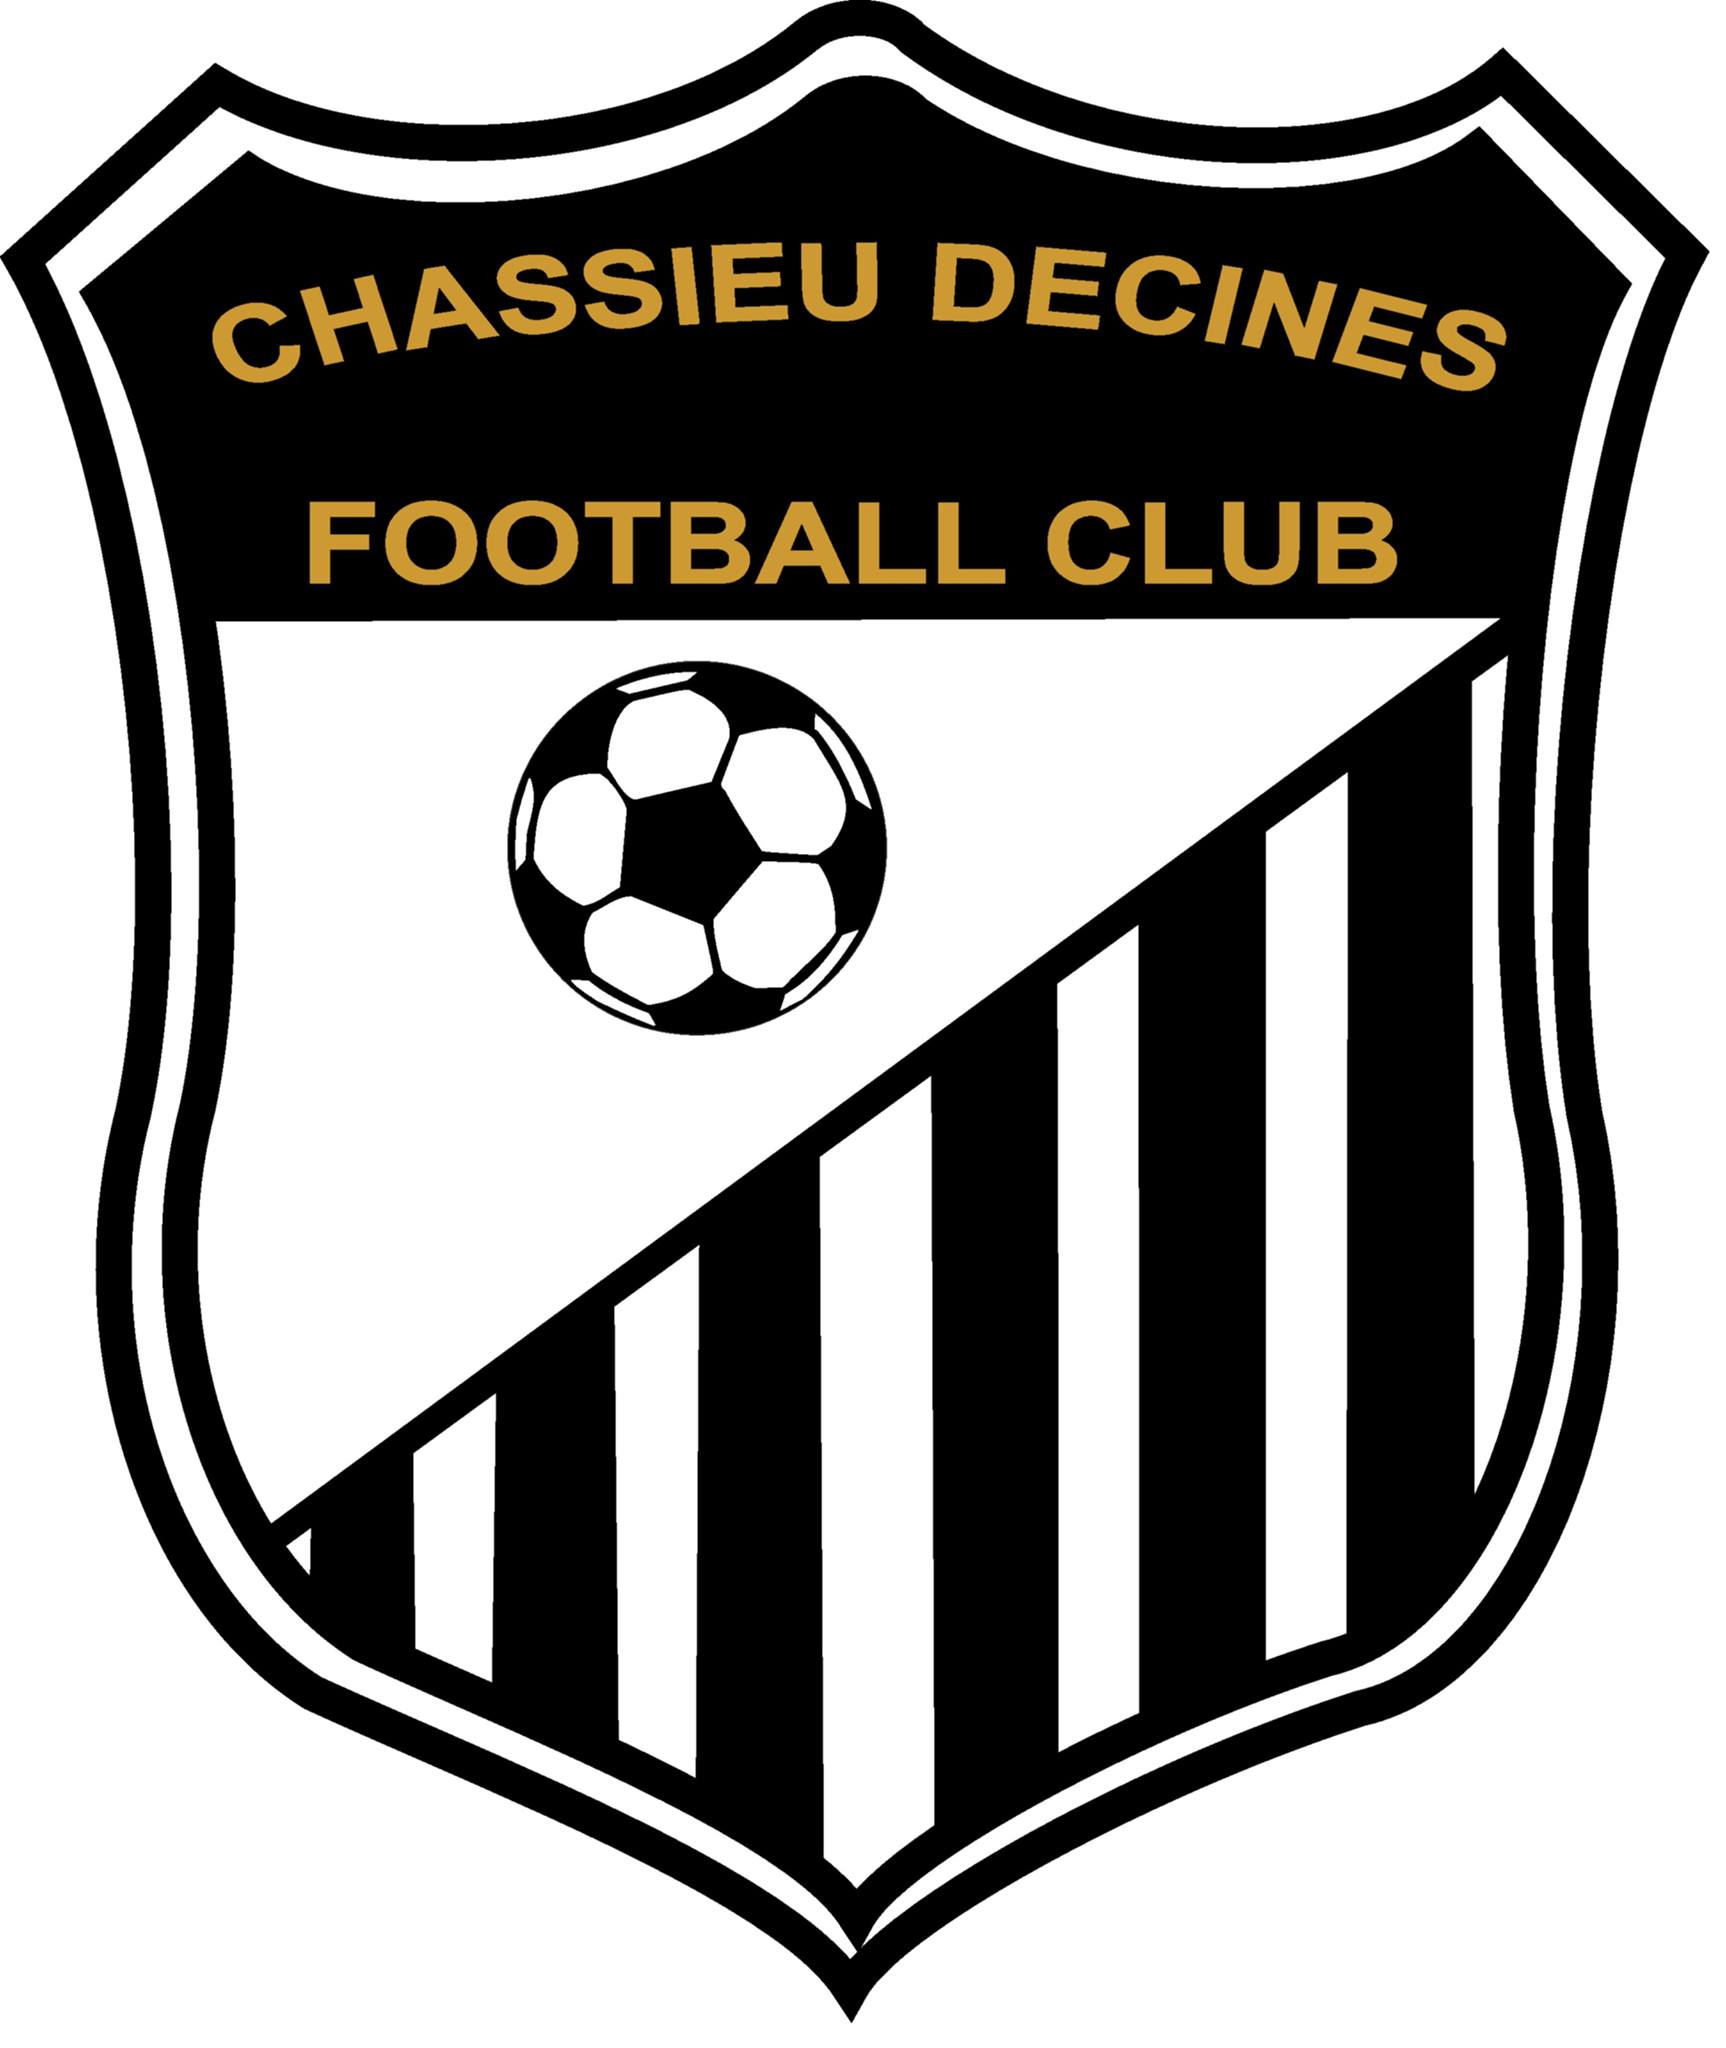 CHASSIEU-DECINES | C.D.F.C. > création d’une section futsal